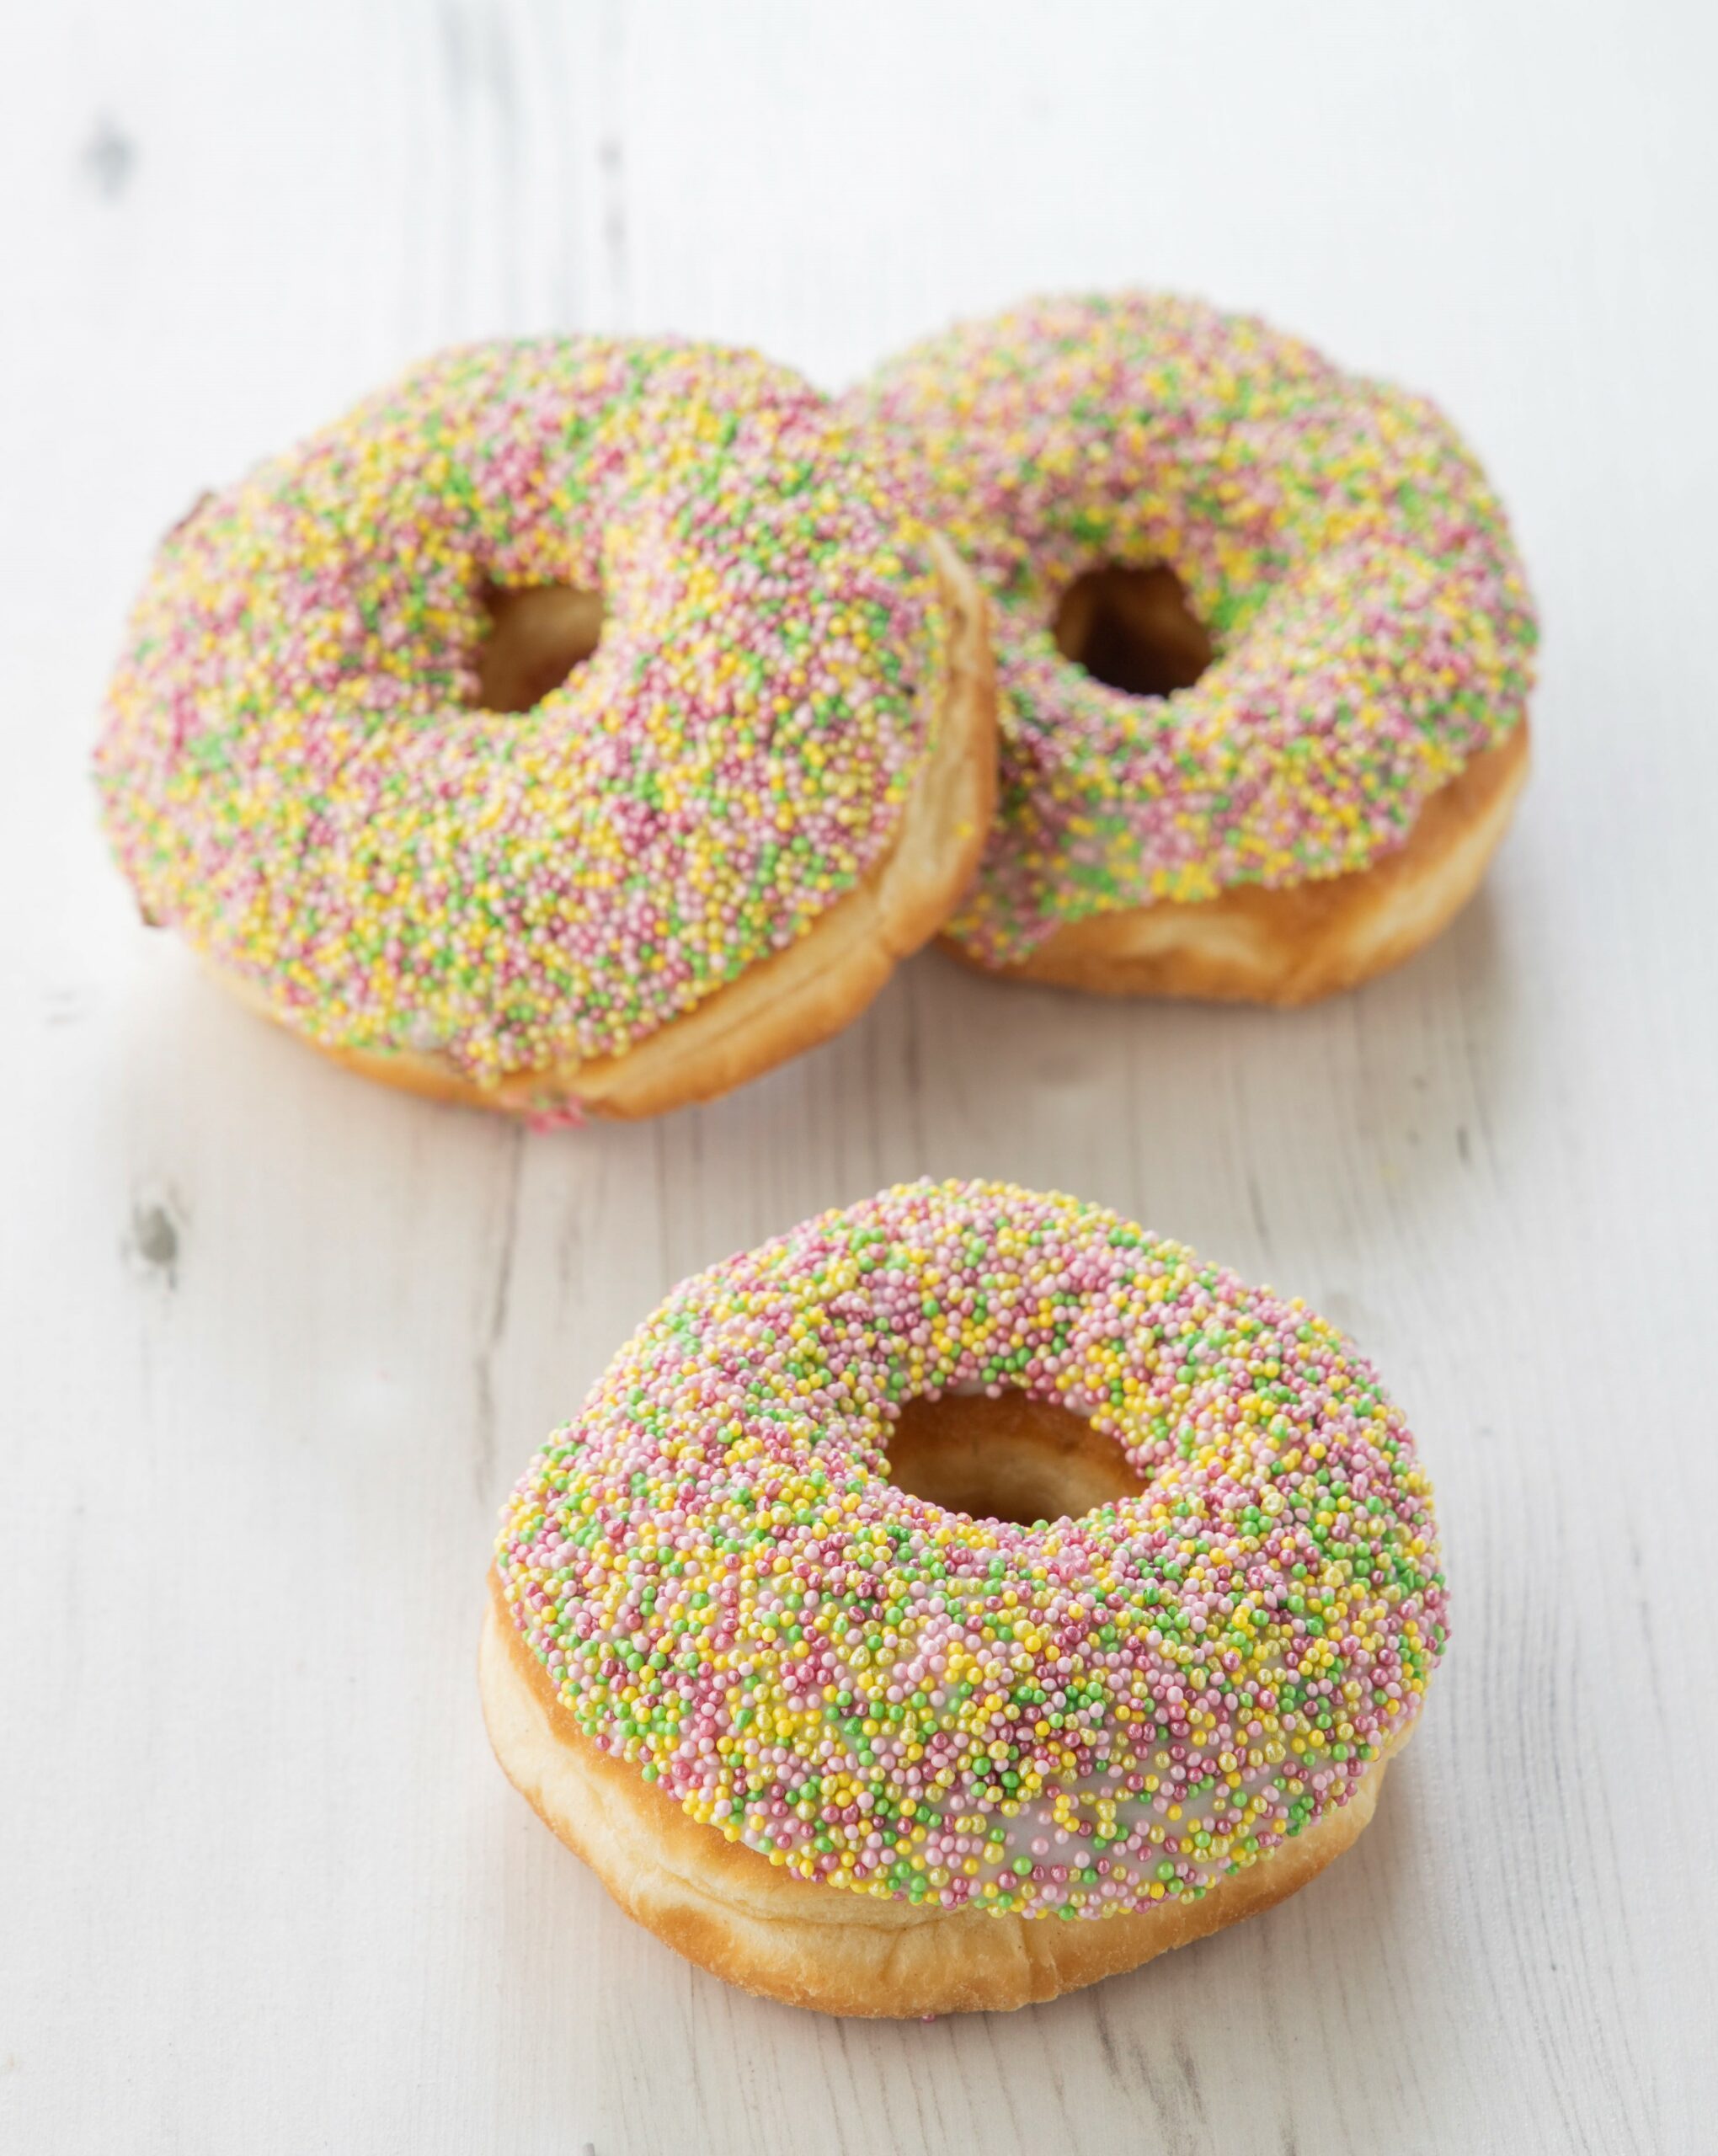 Sprinkled donuts